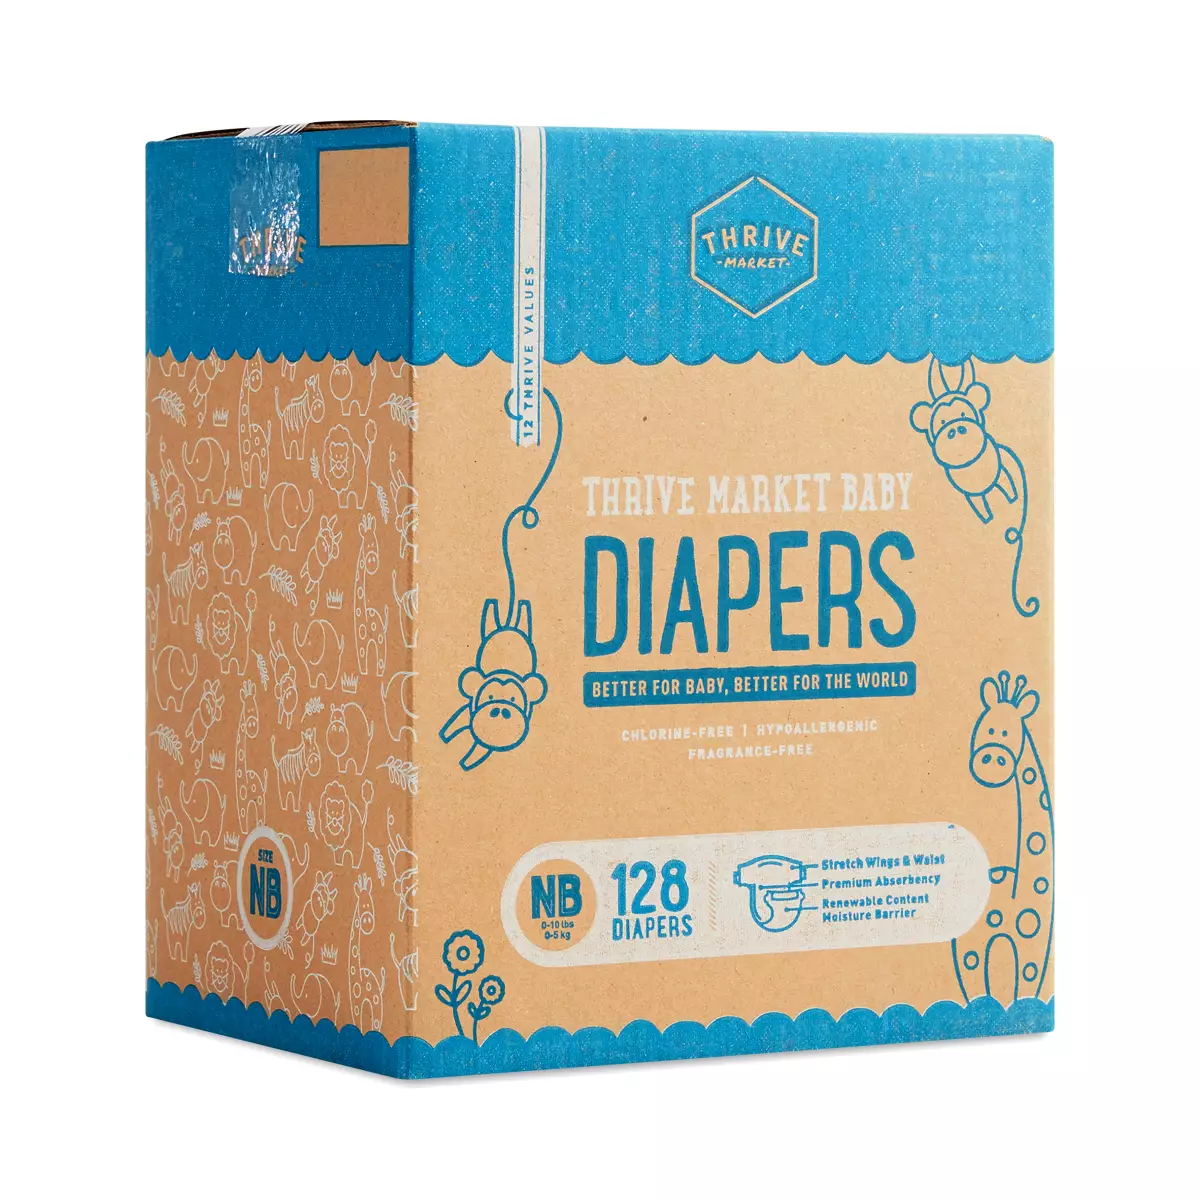 Thrive market diaper deals